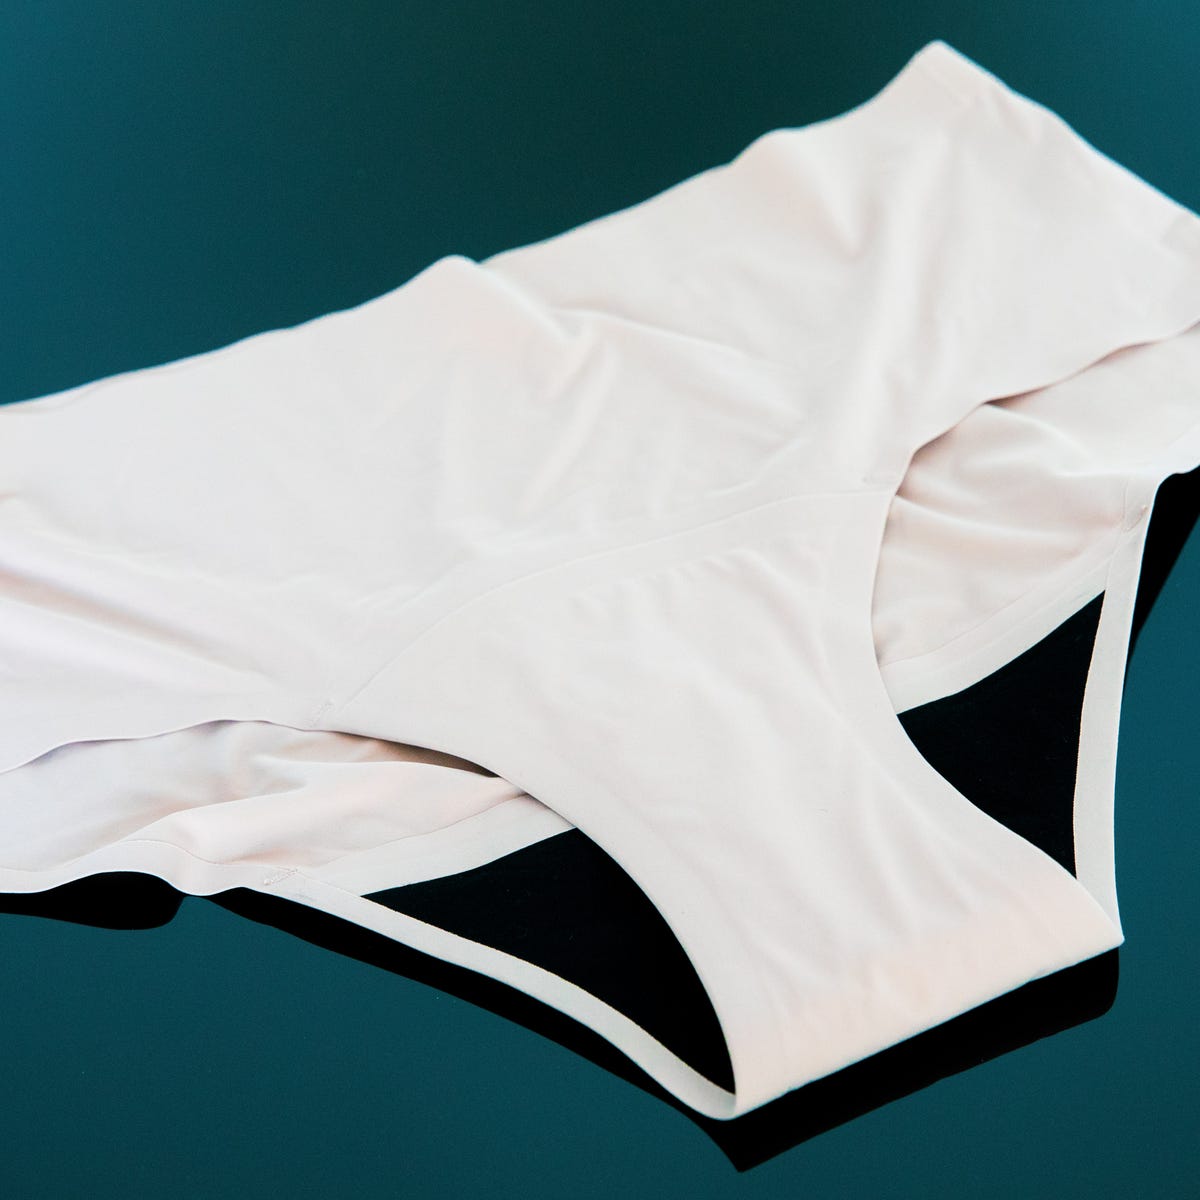 9 Best Period Underwear Brands & Styles (2022)